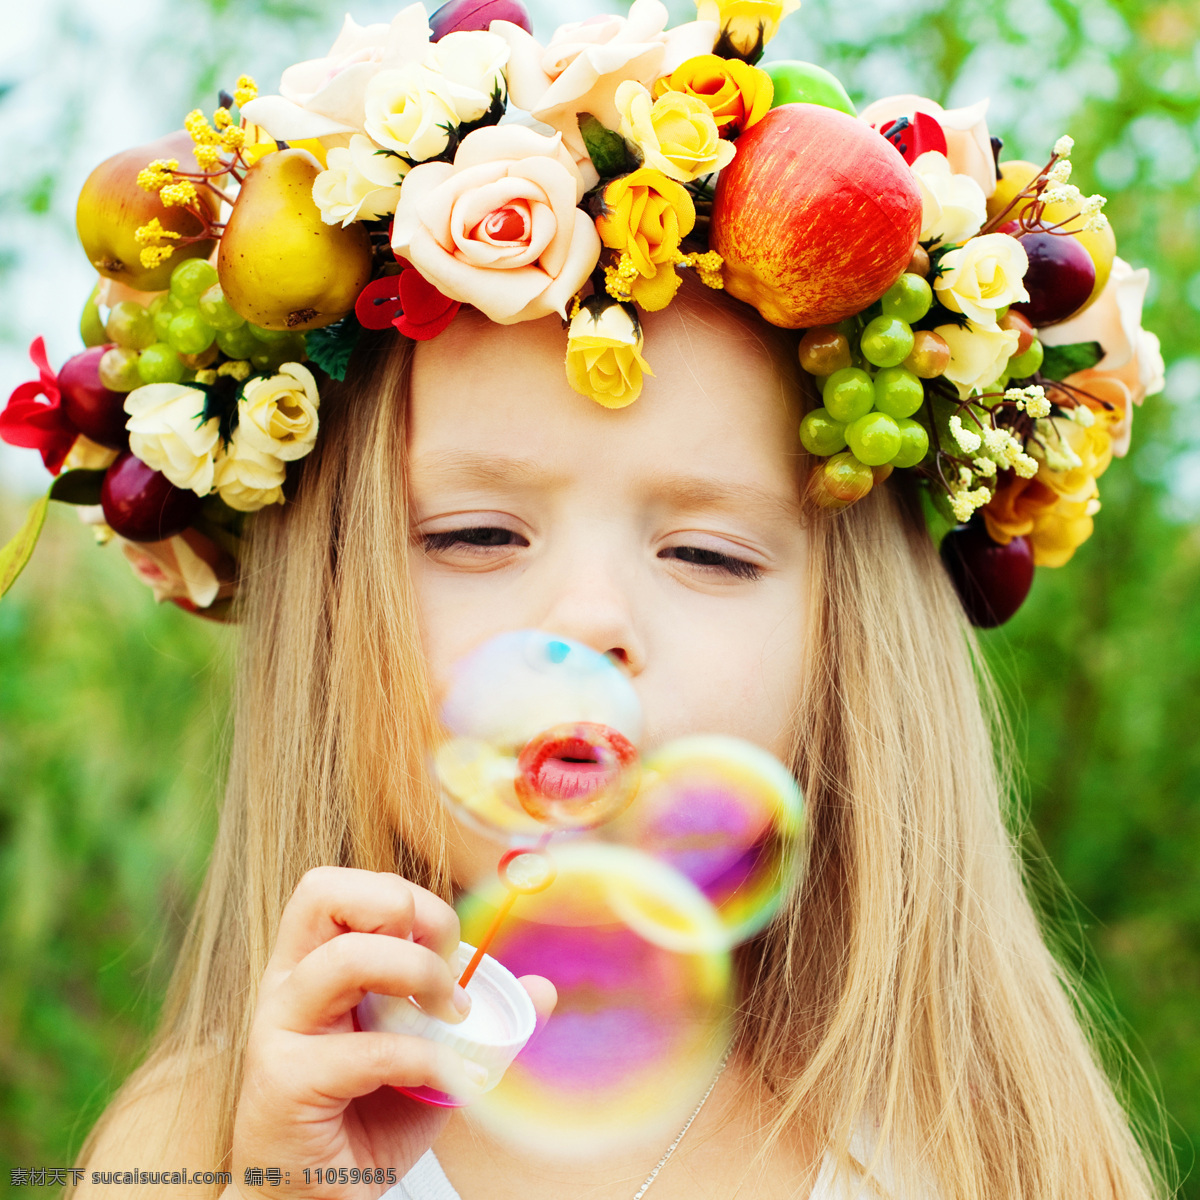 吹 泡泡 女孩 孩子 儿童 花朵 植物 梦幻背景 花环 生活人物 人物图片